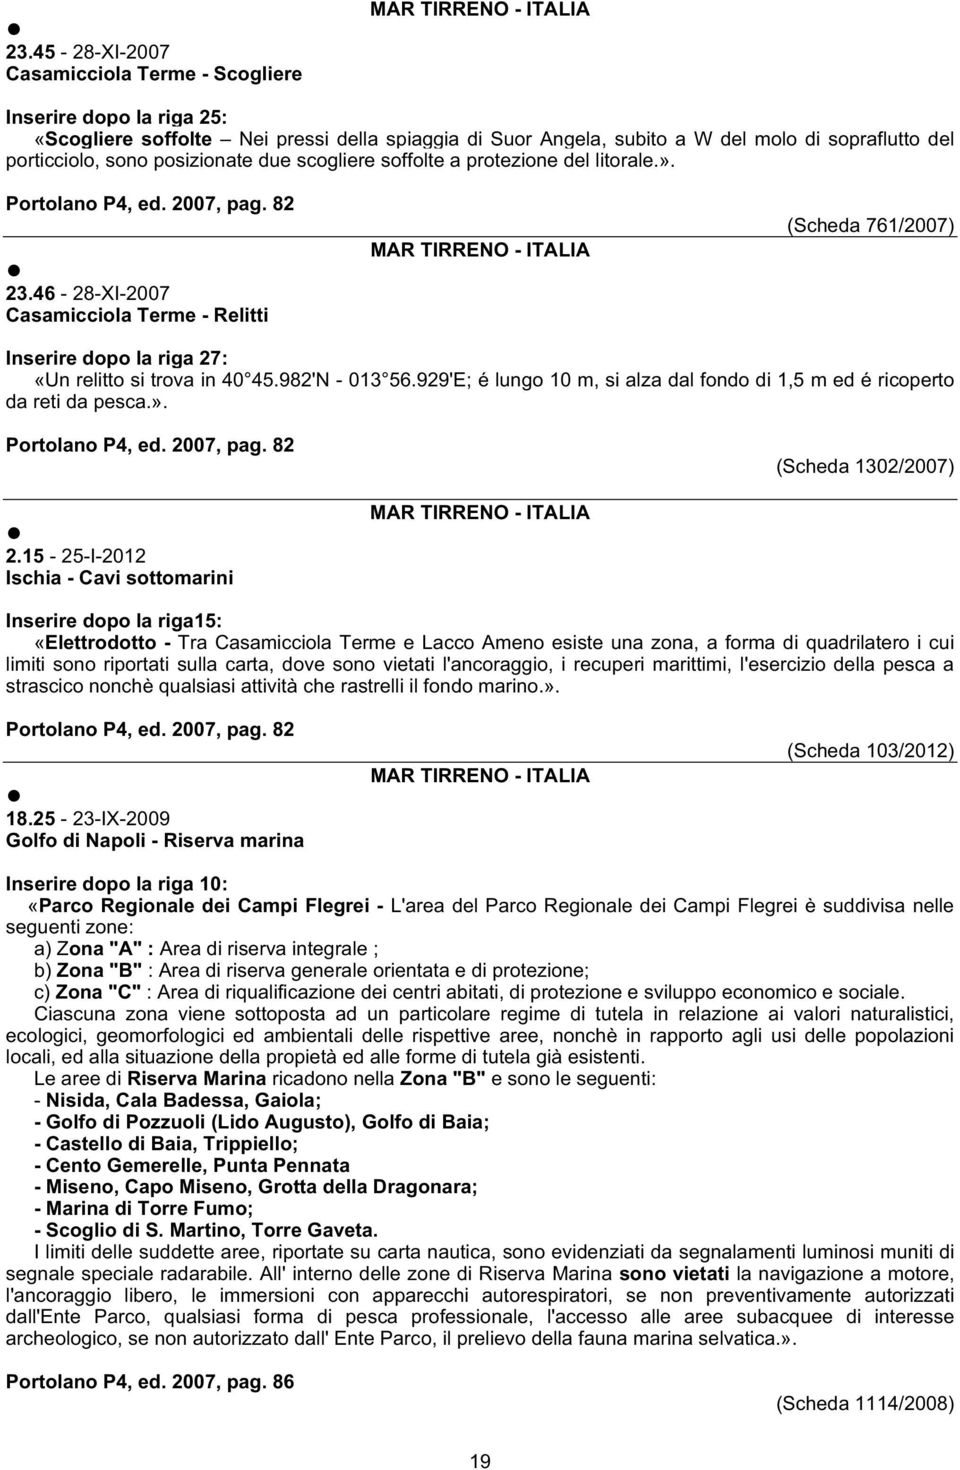 46-28-XI-2007 Casamicciola Terme - Relitti (Scheda 761/2007) Inserire dopo la riga 27: «Un relitto si trova in 40 45.982'N - 013 56.